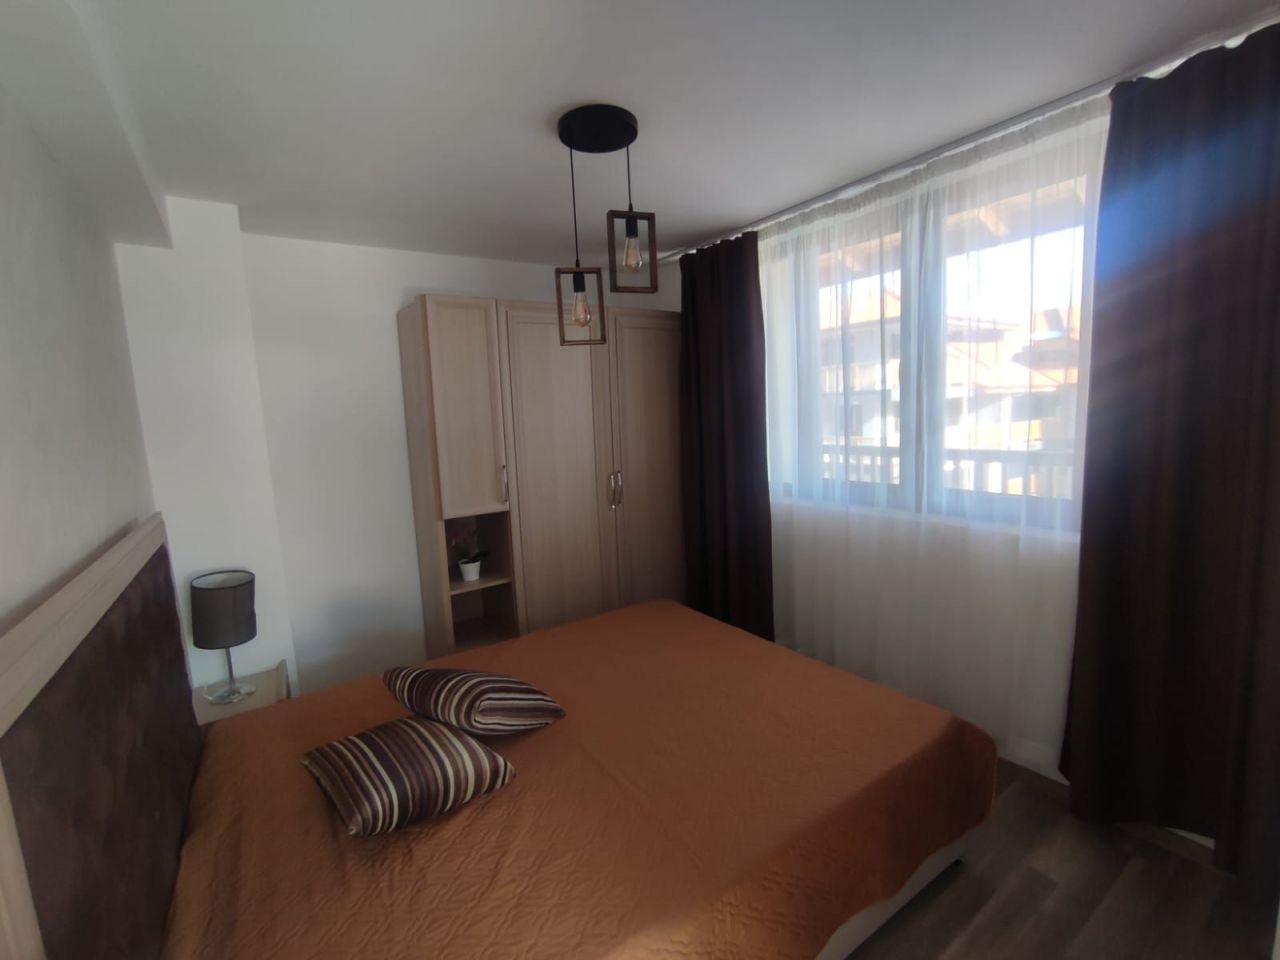 Apartment in Bansko, Bulgaria, 72 sq.m - picture 1